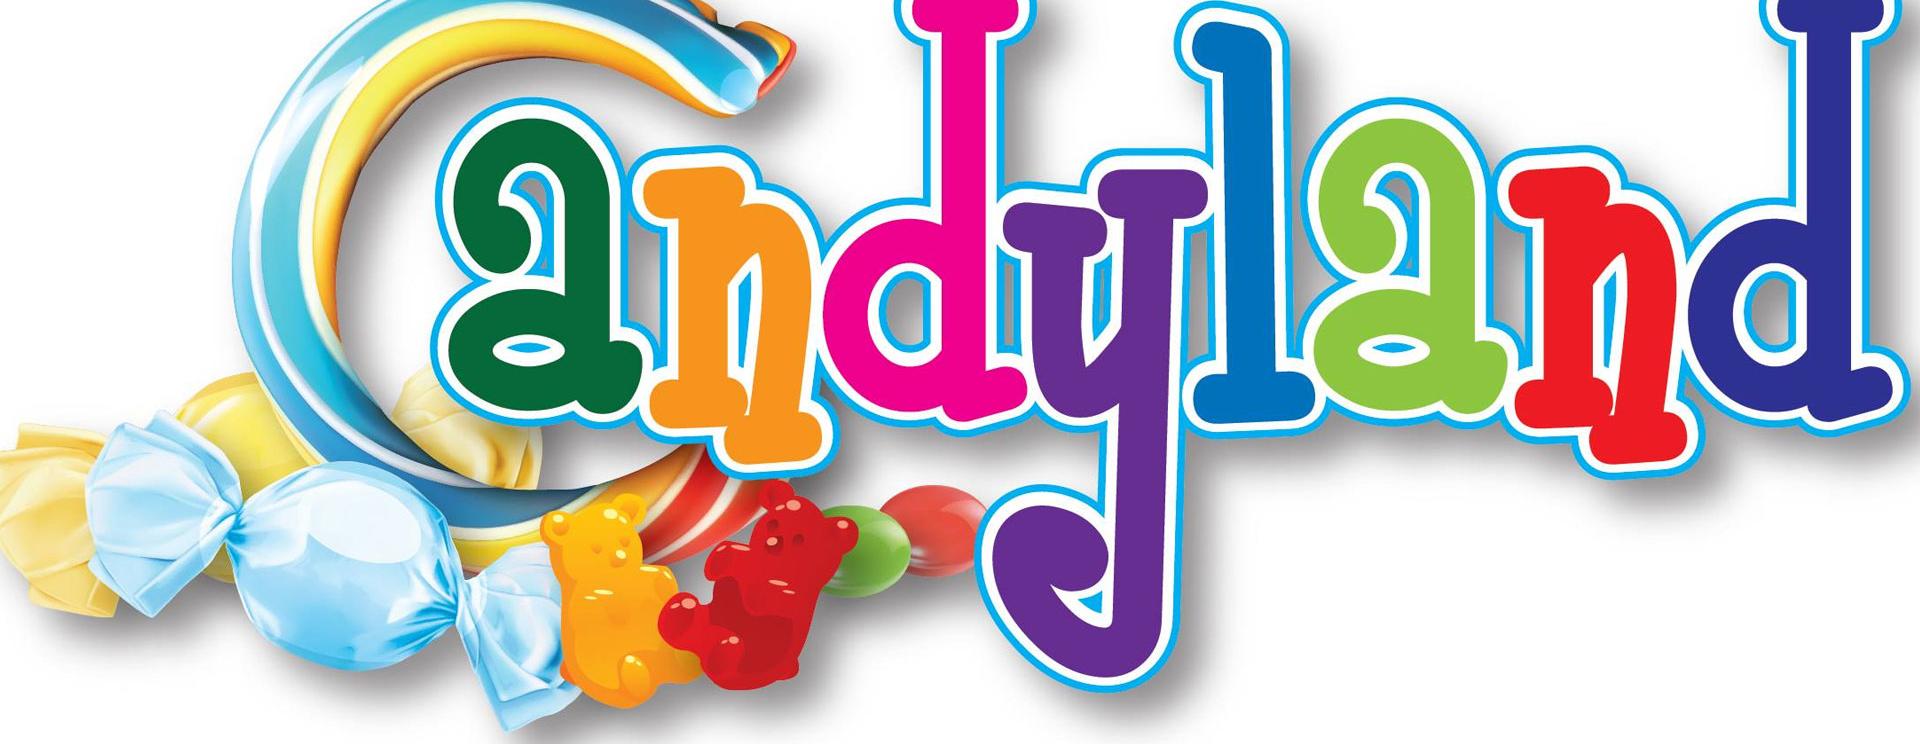 Candyland clipart logo. Black hills badlands south